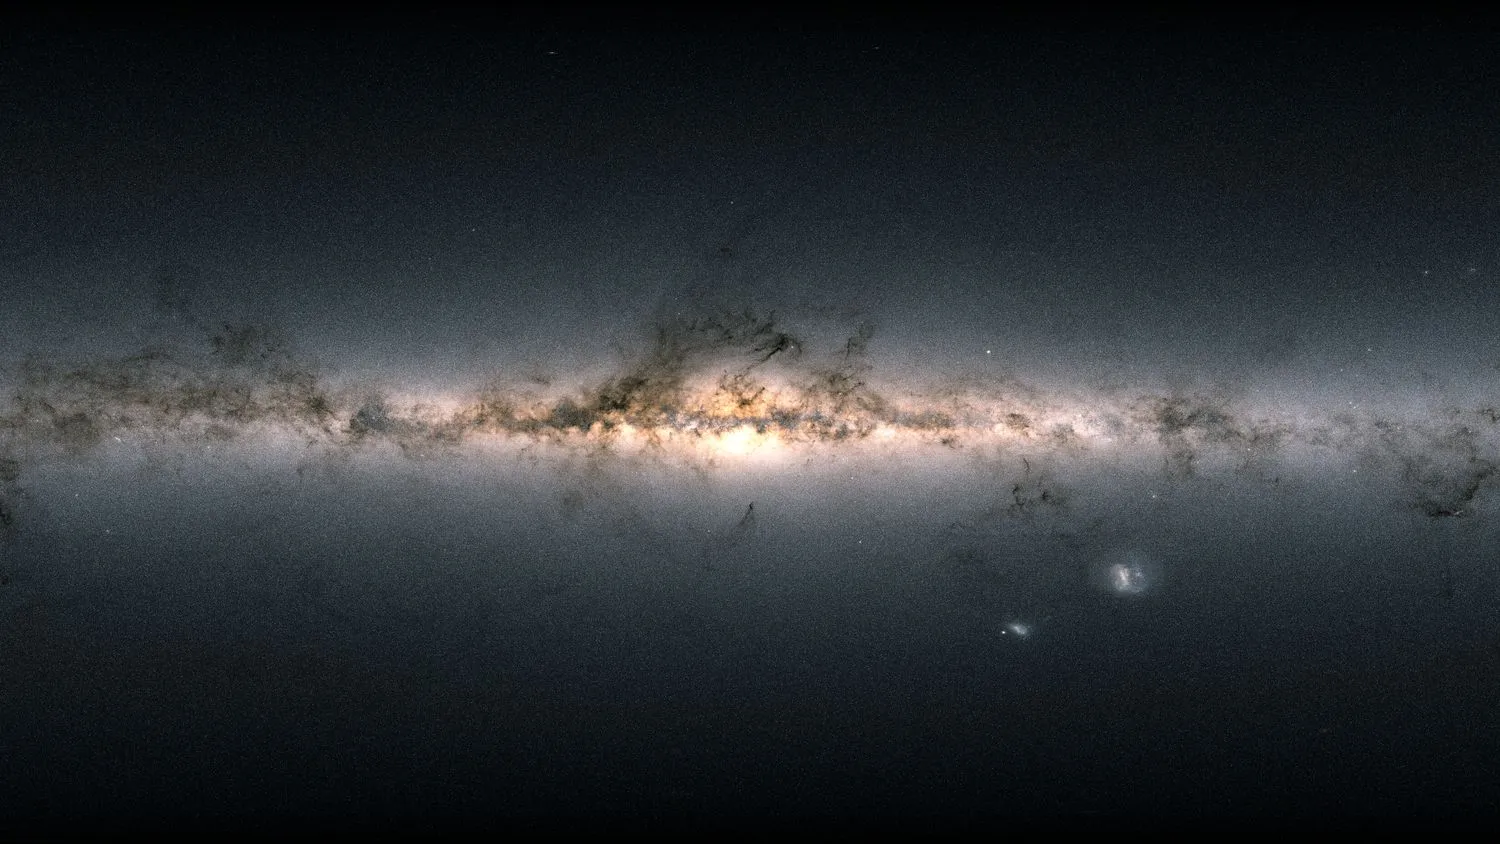 Mehr über den Artikel erfahren Mit dem Halo aus dunkler Materie in der Milchstraße ist etwas faul